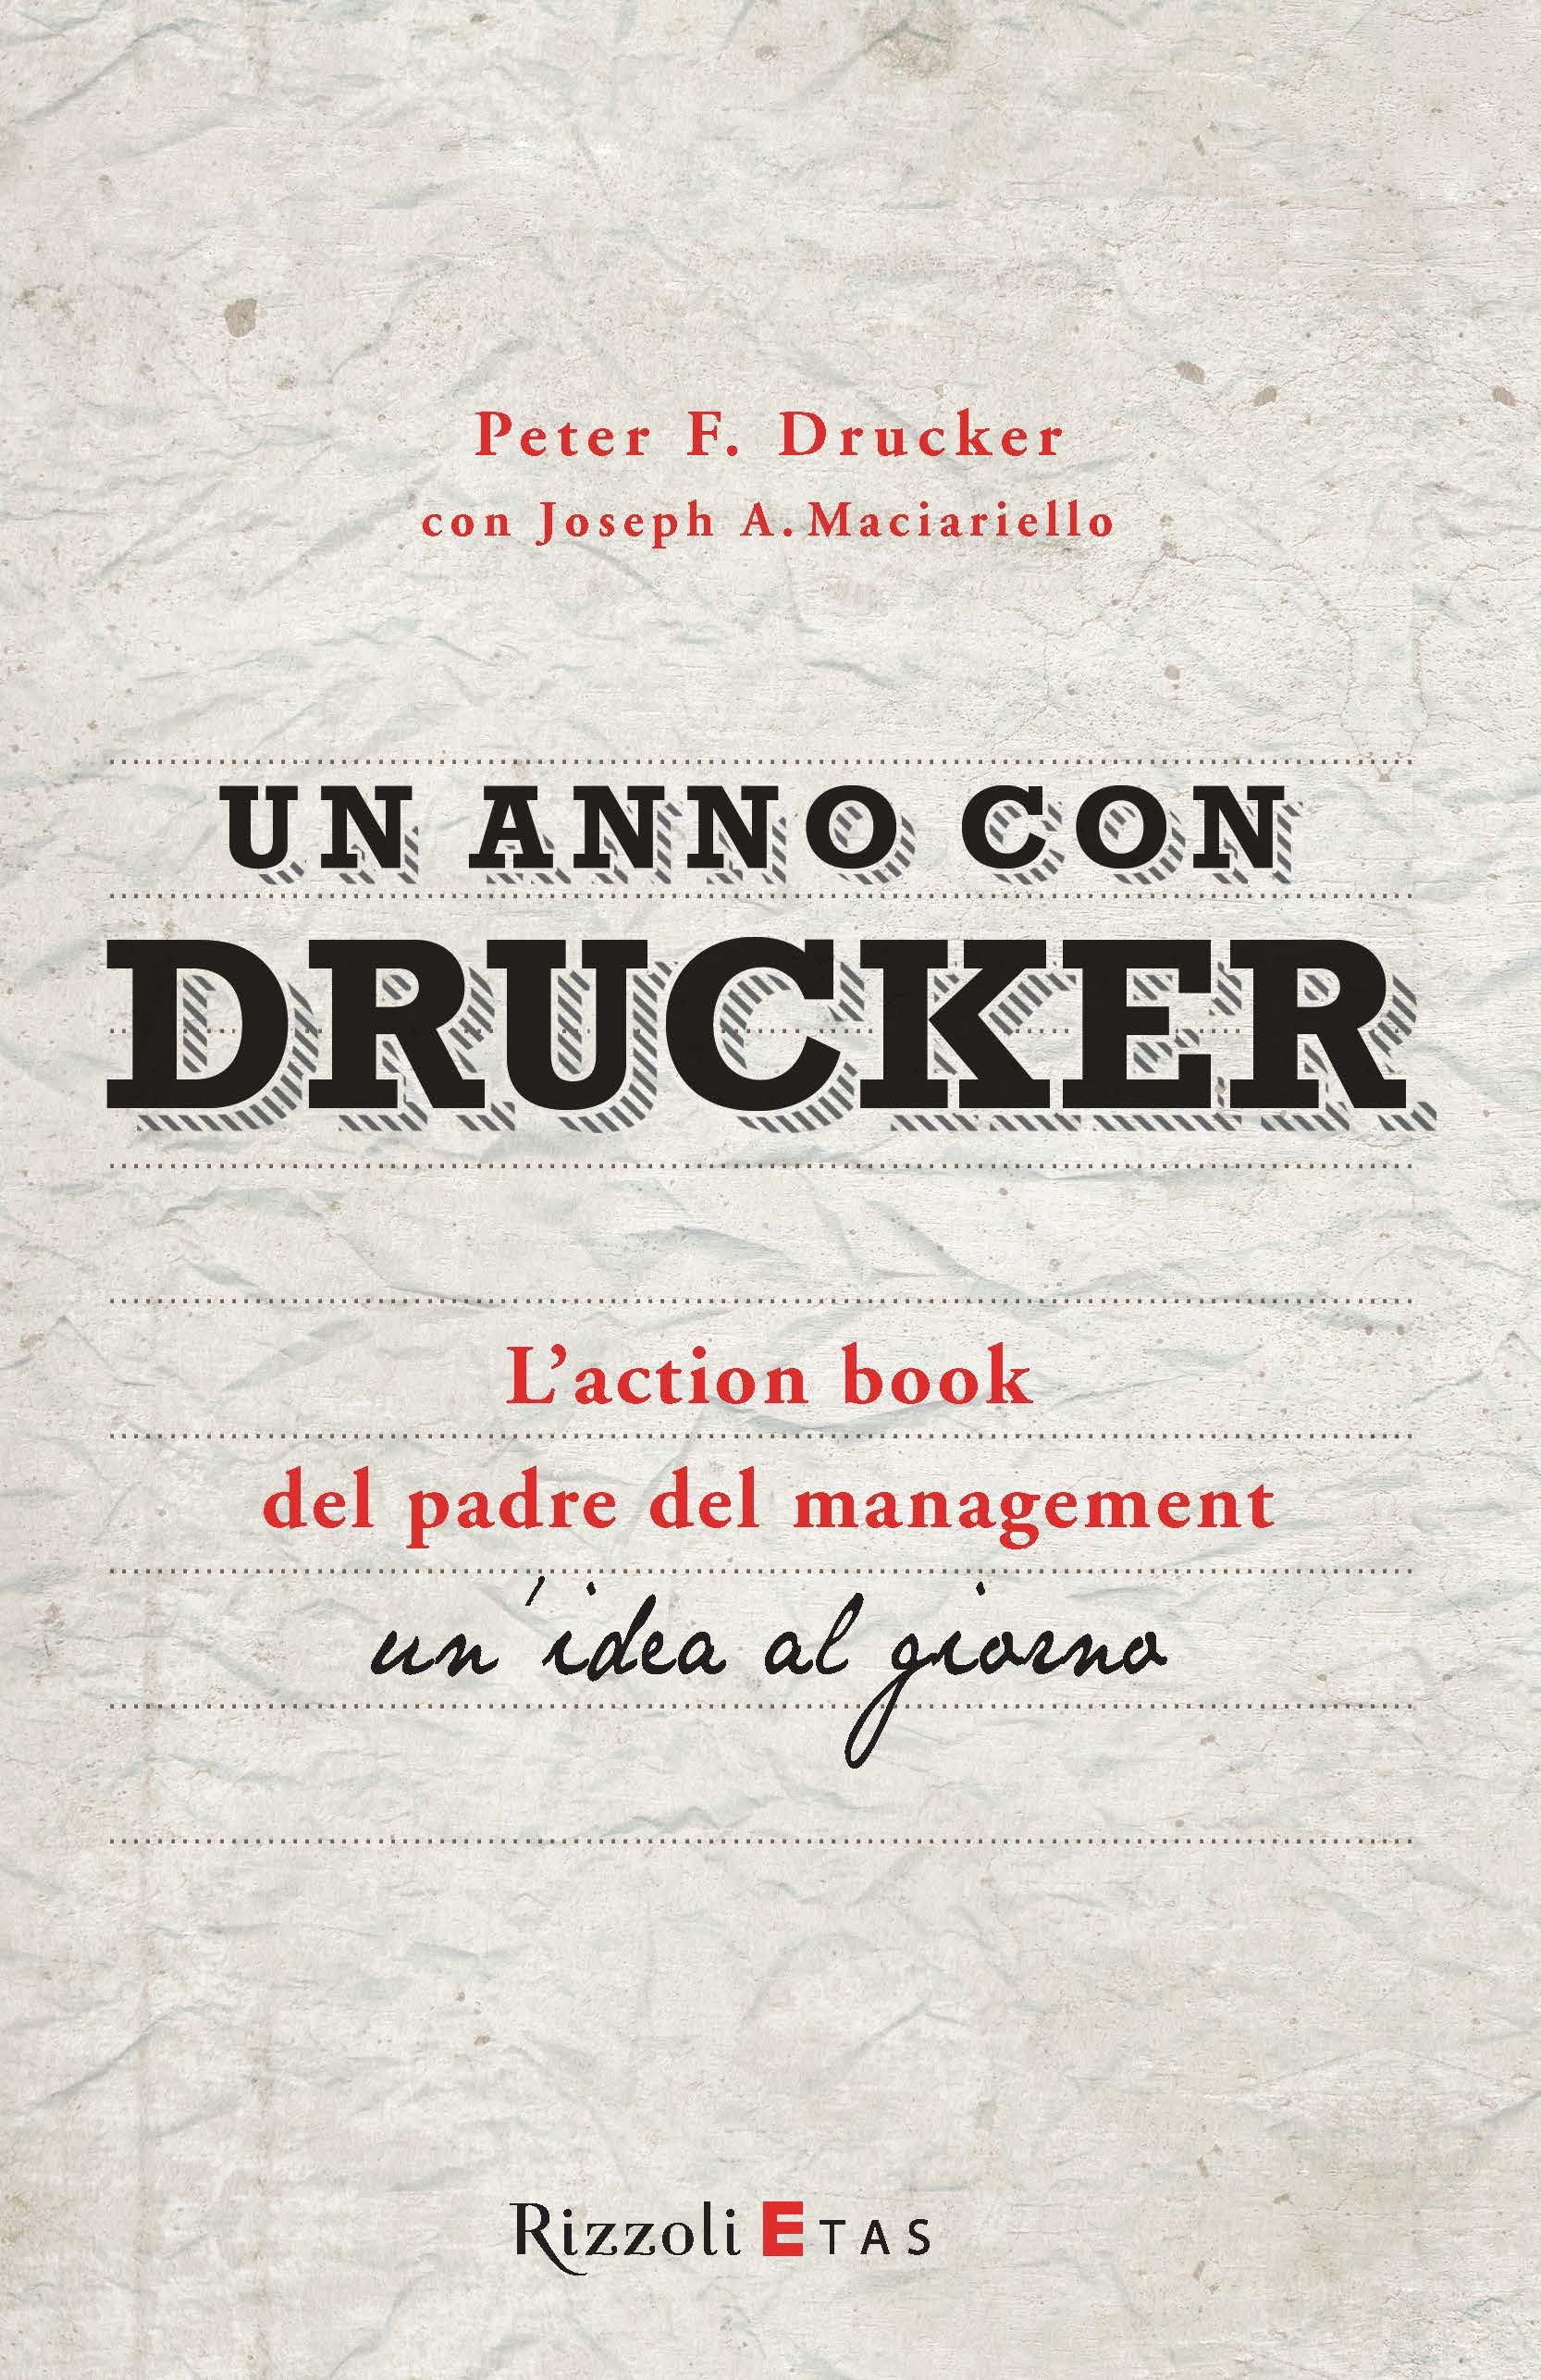 Un anno con Drucker - Librerie.coop